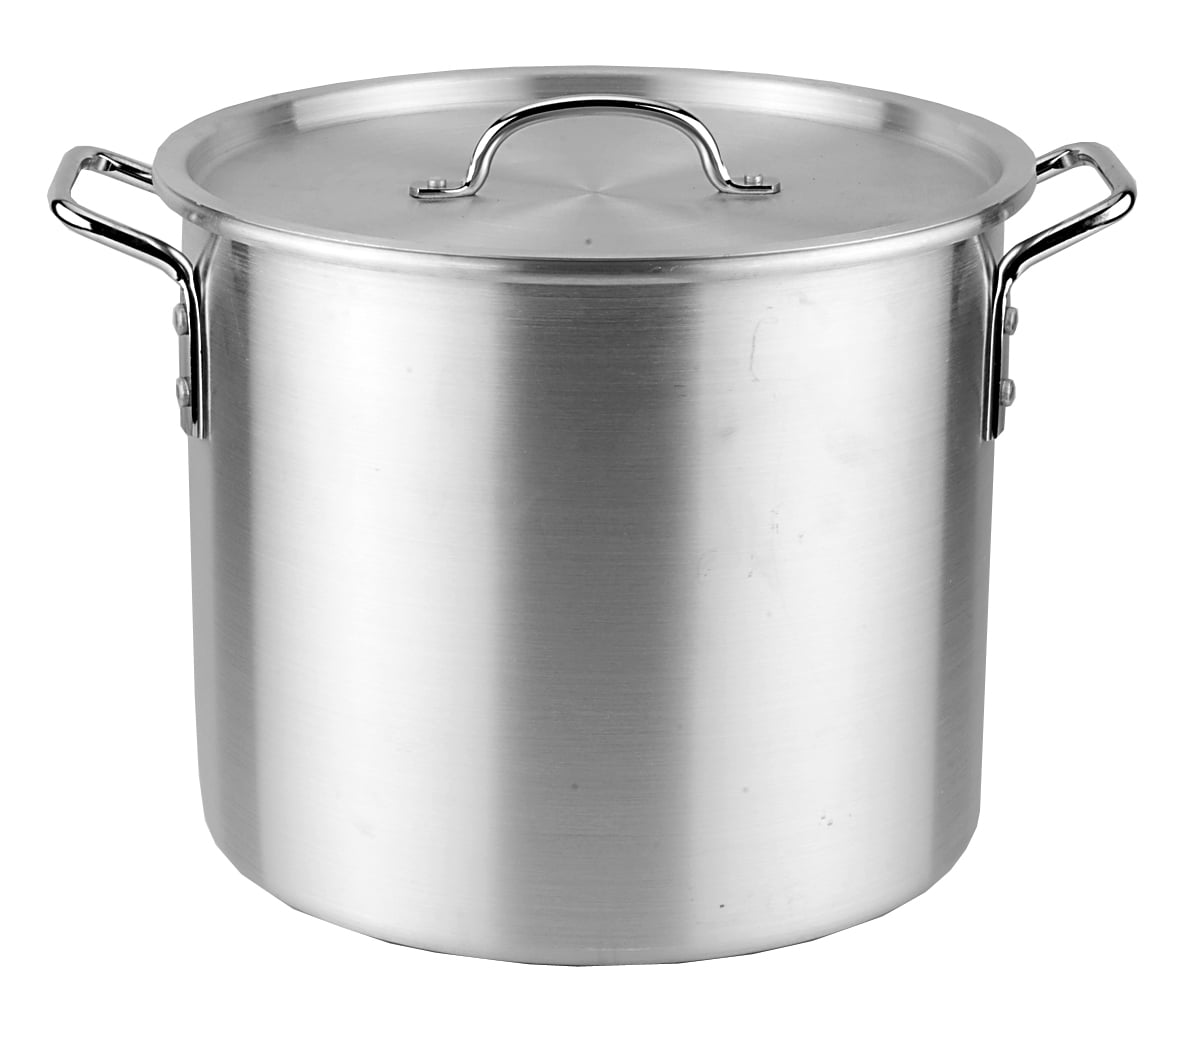 Kitchen Sense Aluminum Stock Pot with Steamer 16 quart (4 gallon)